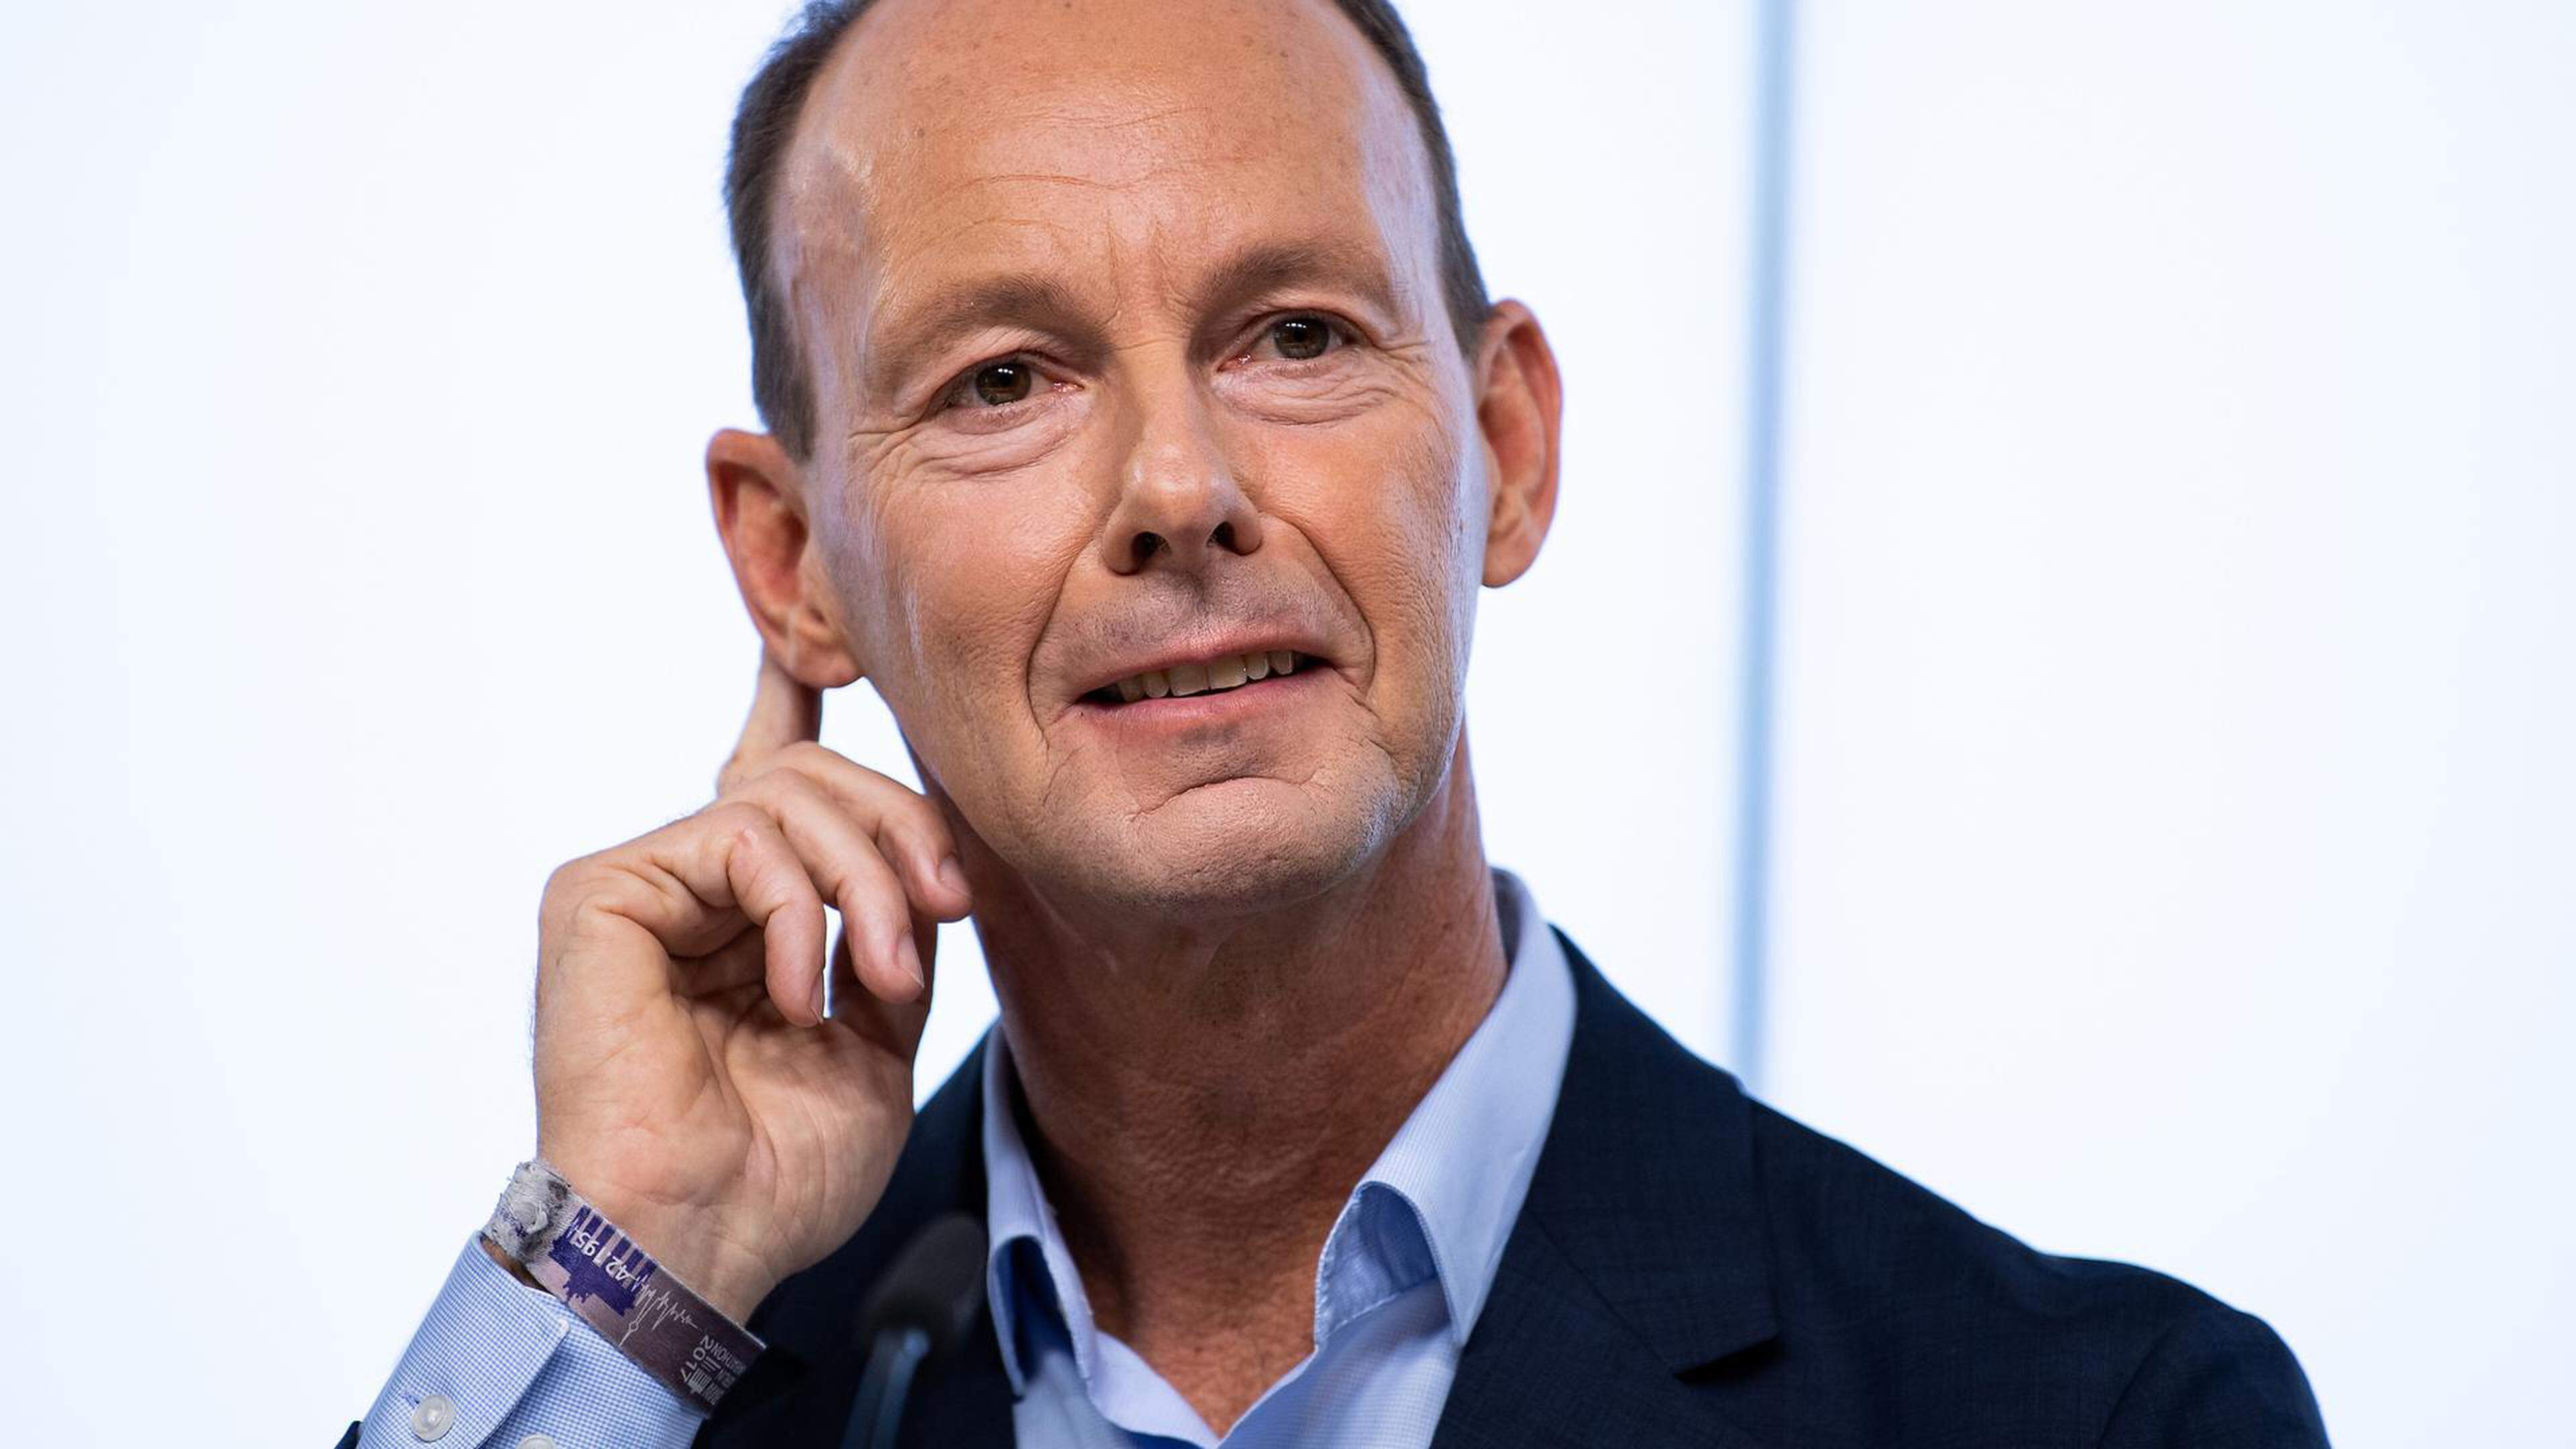 Die Konjunkturabschwächung in der EU bedeutet weniger Werbung für die RTL Group